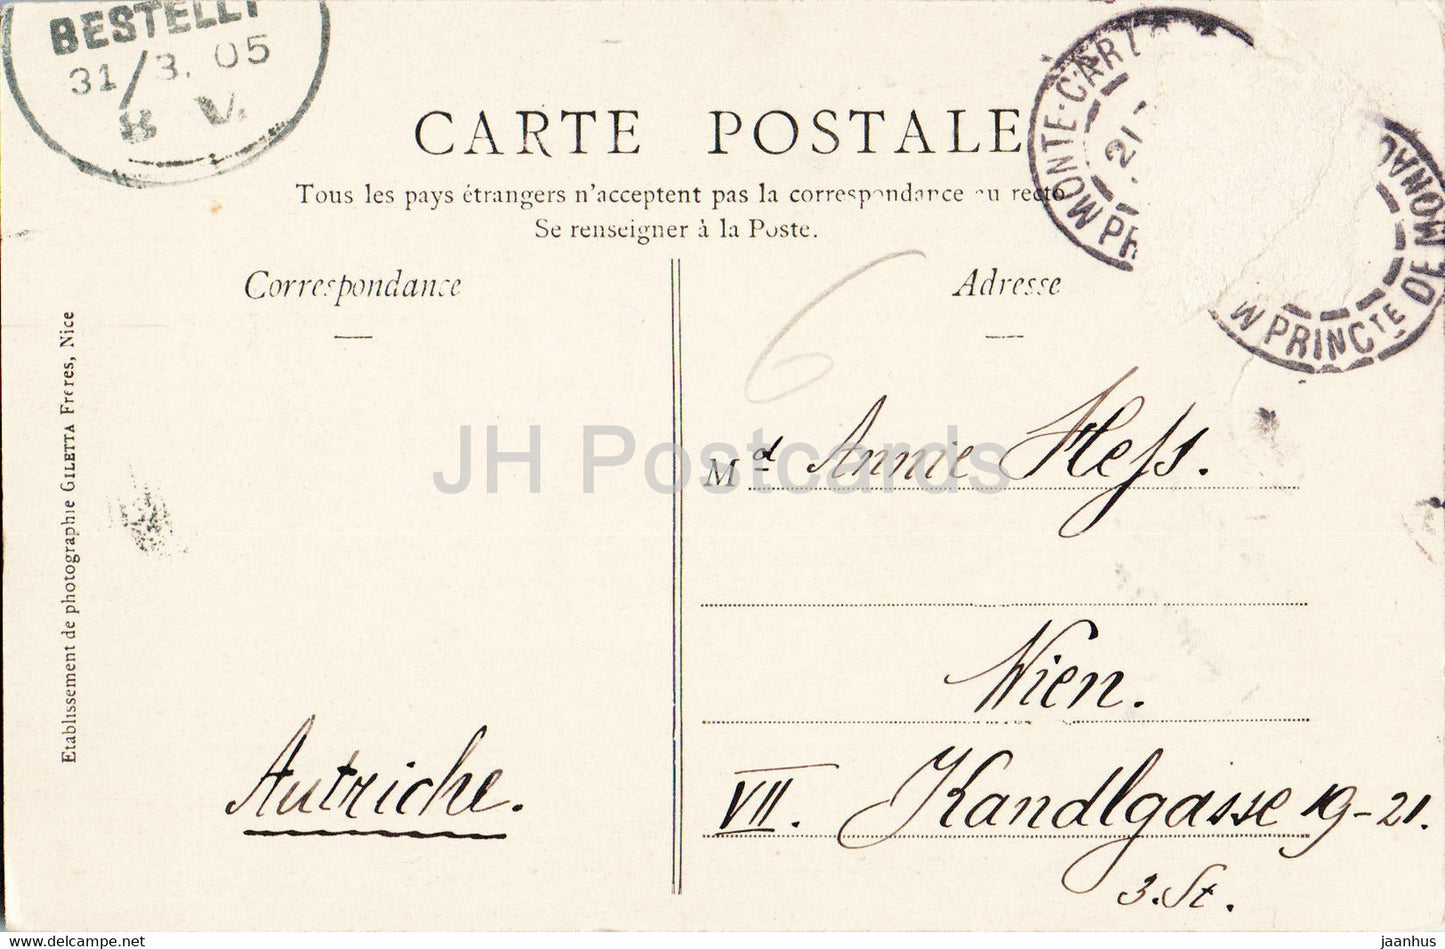 Monte Carlo - Theatre et Terrasses - Collection Artistique - 708 - old postcard - 1905 - Monaco - used